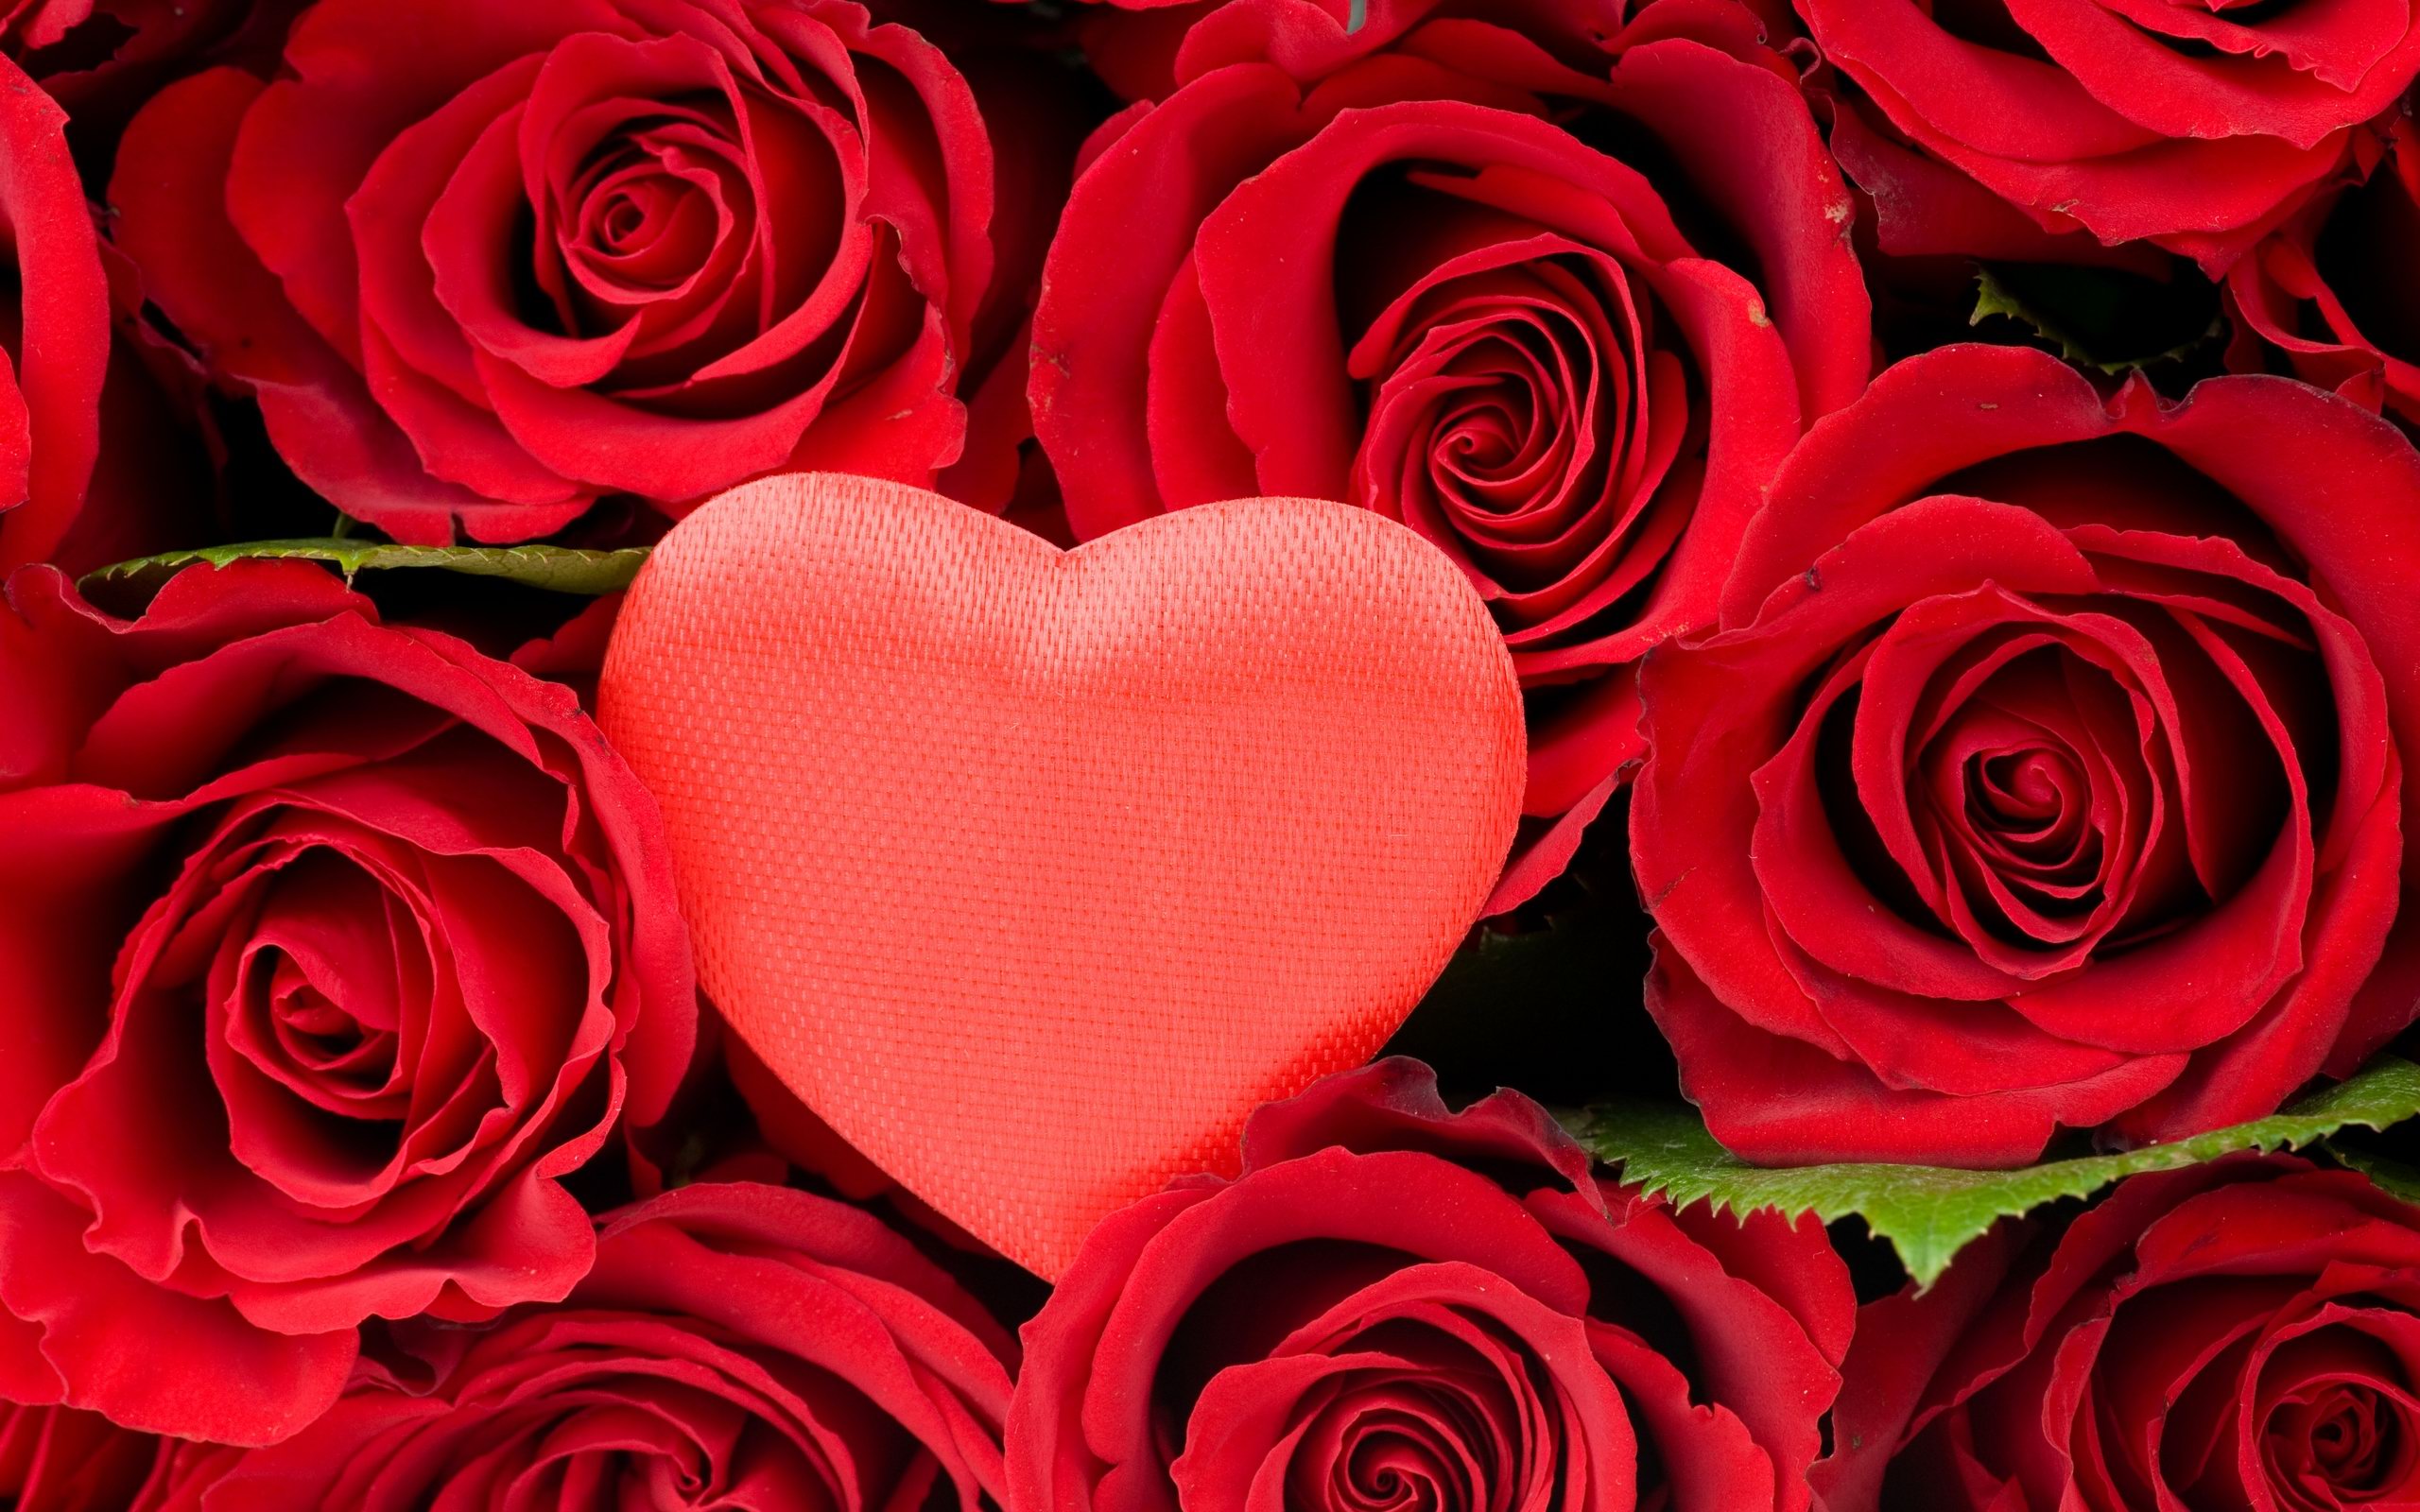 Gul yuzim. Красные розы. Розы в сердце. Цветы розы красные. Цветы сердечки.